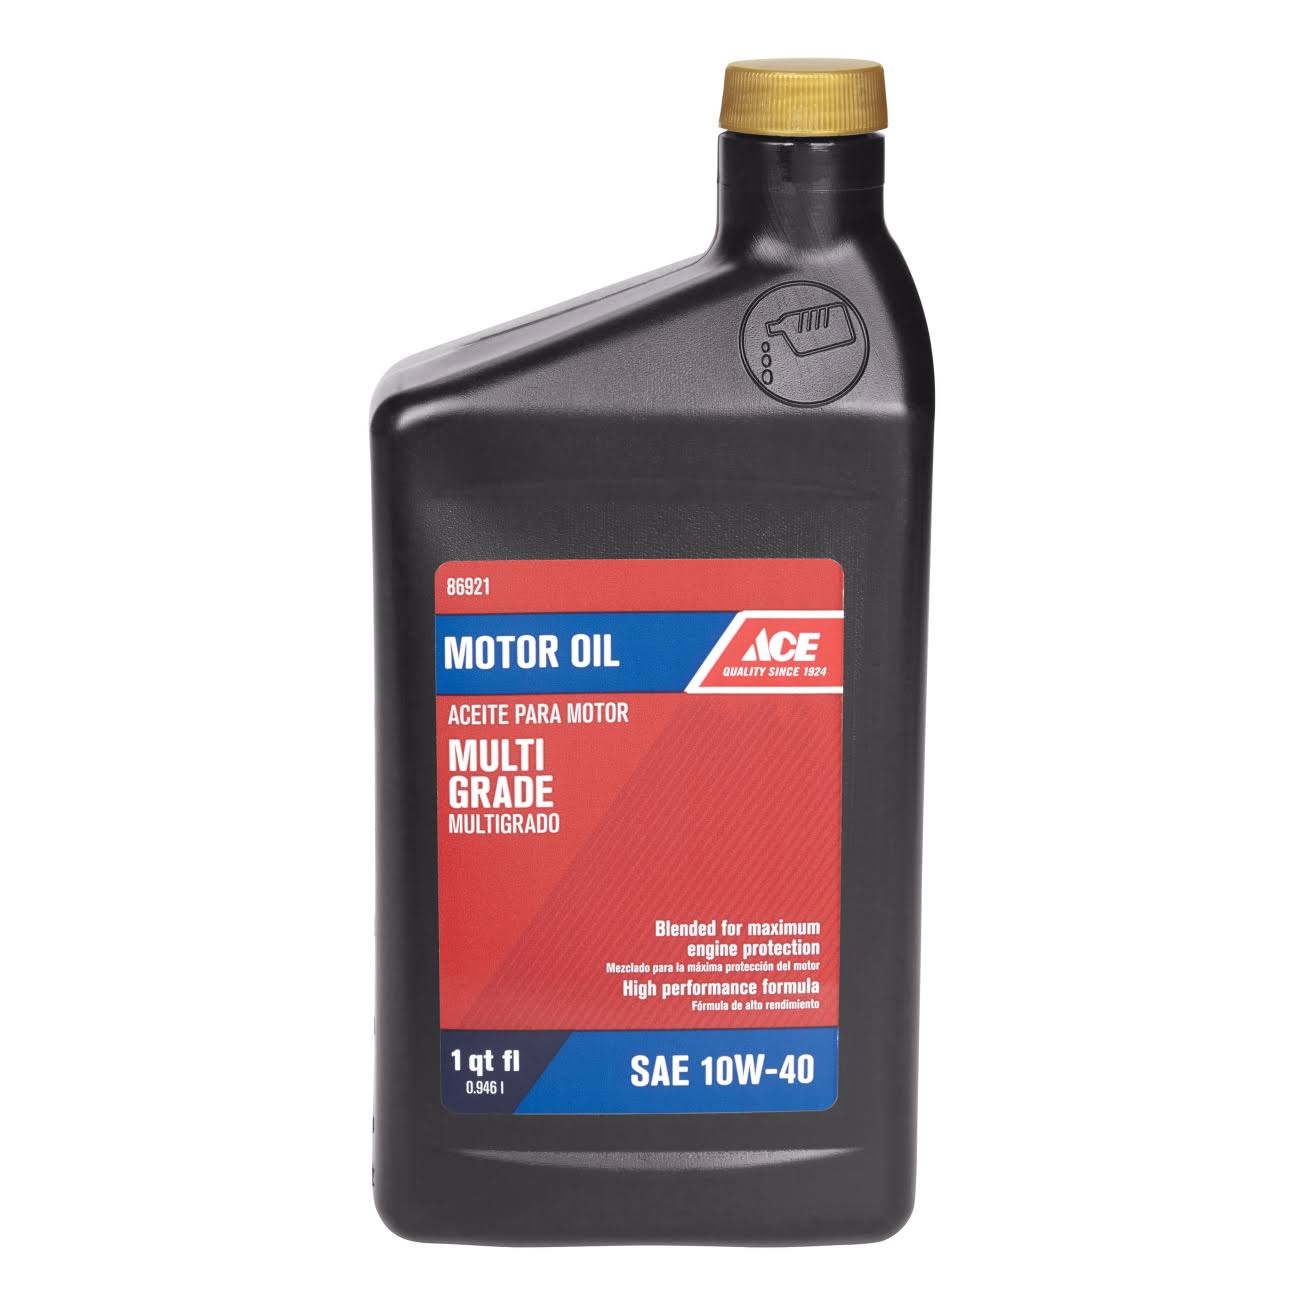 Ace Oil Motor 10W40 SH/CD qt